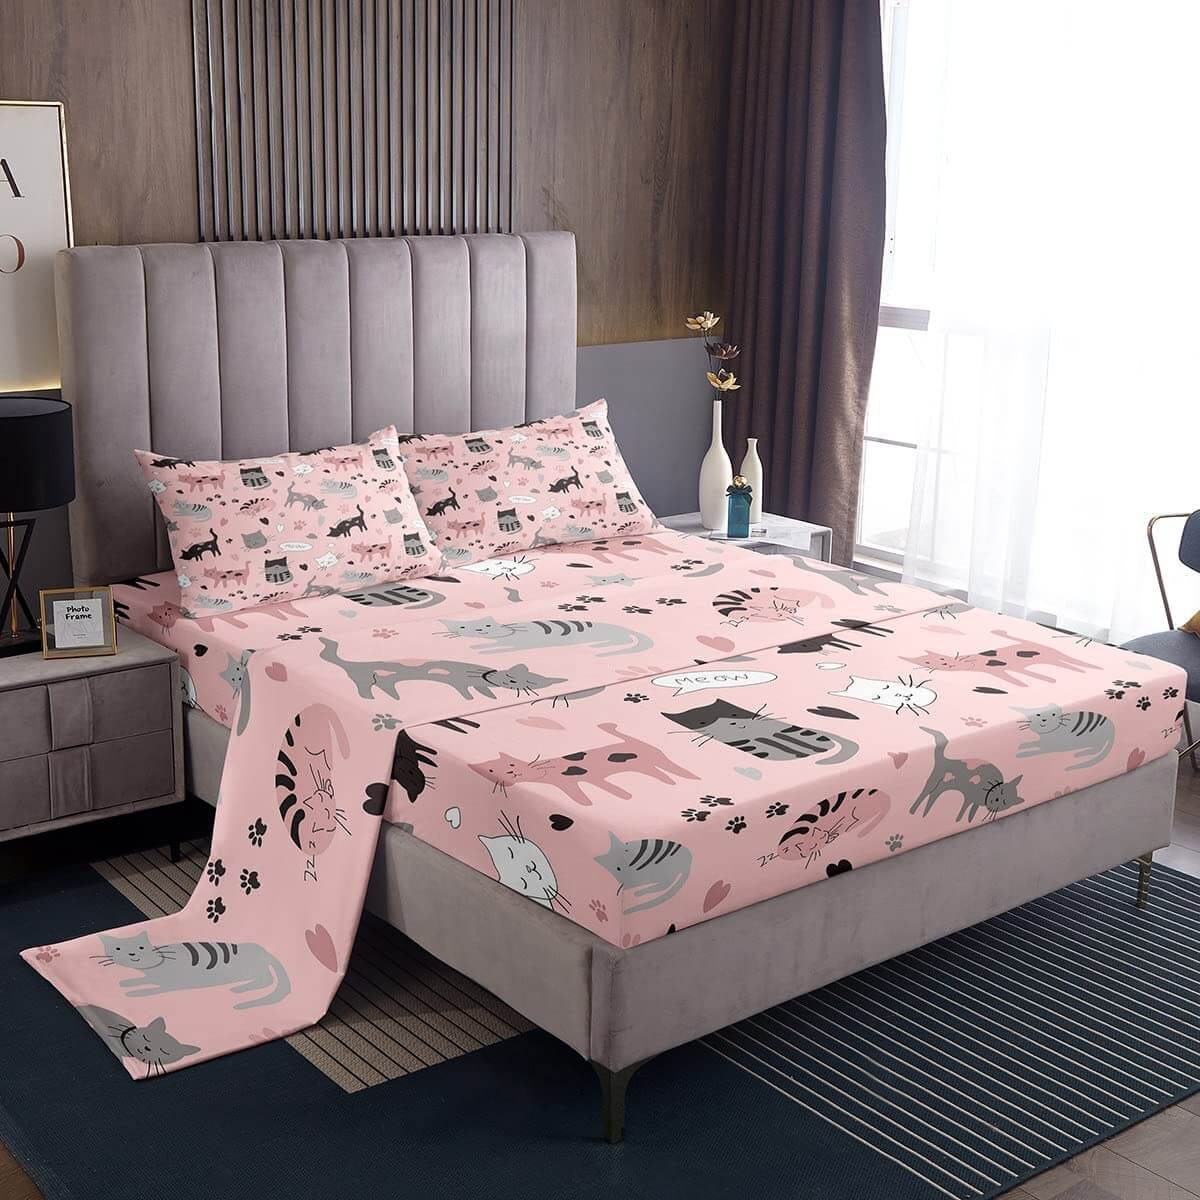 Комплект постельного белья для детей Erosebridal Cat Lover's, 4 предмета, розовый/серый/белый